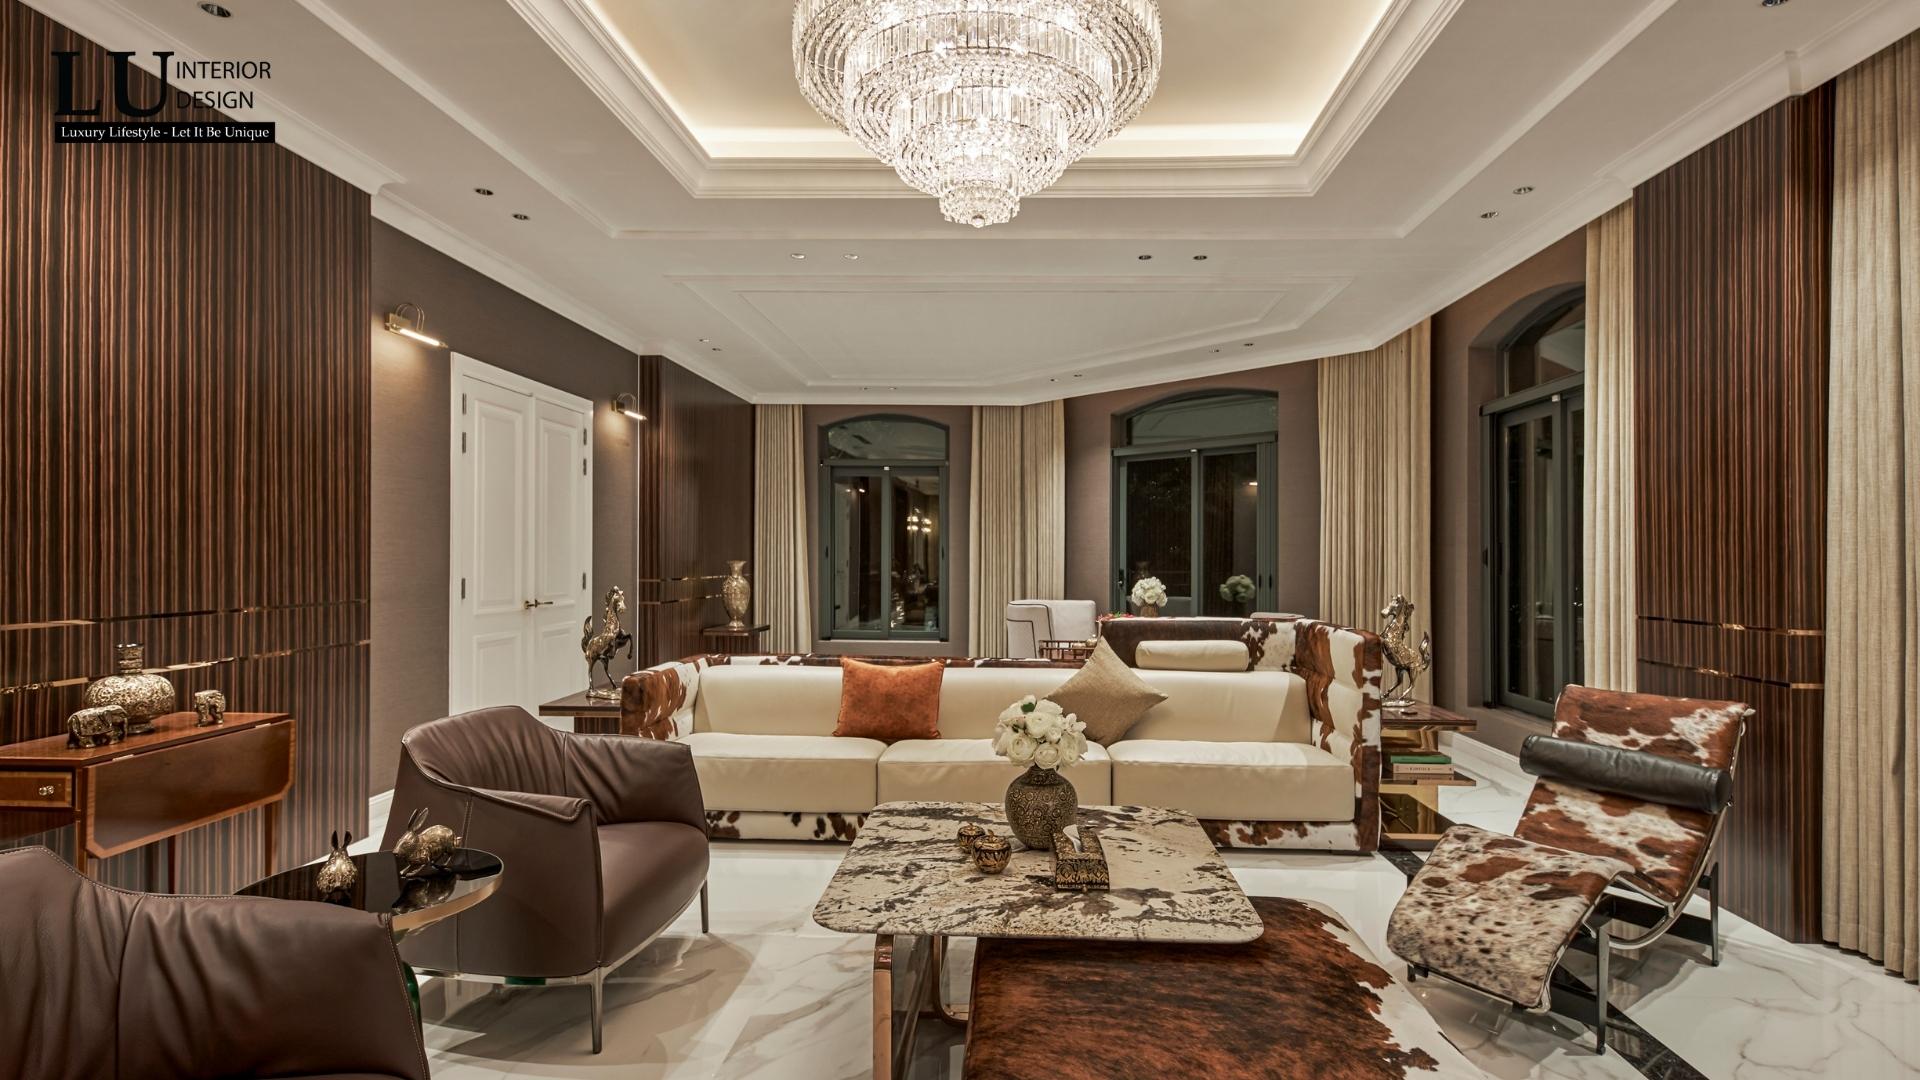 Vẻ đẹp phòng khách khi về đêm dưới ánh đèn vàng sang trọng | Dự án Victoria Village - LU Design.